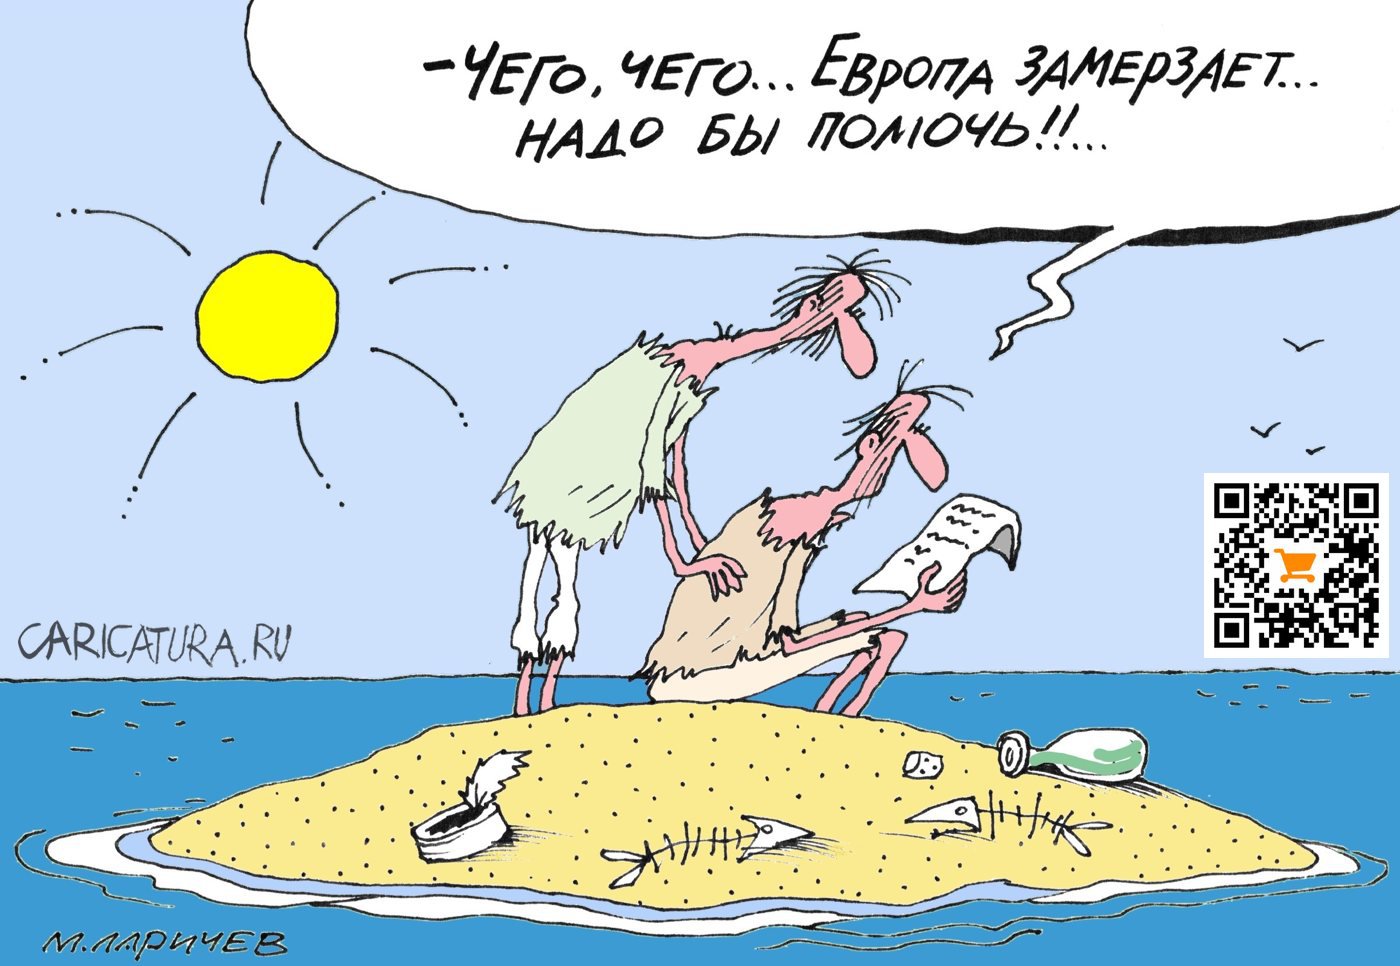 Карикатура "ОтSOS", Михаил Ларичев